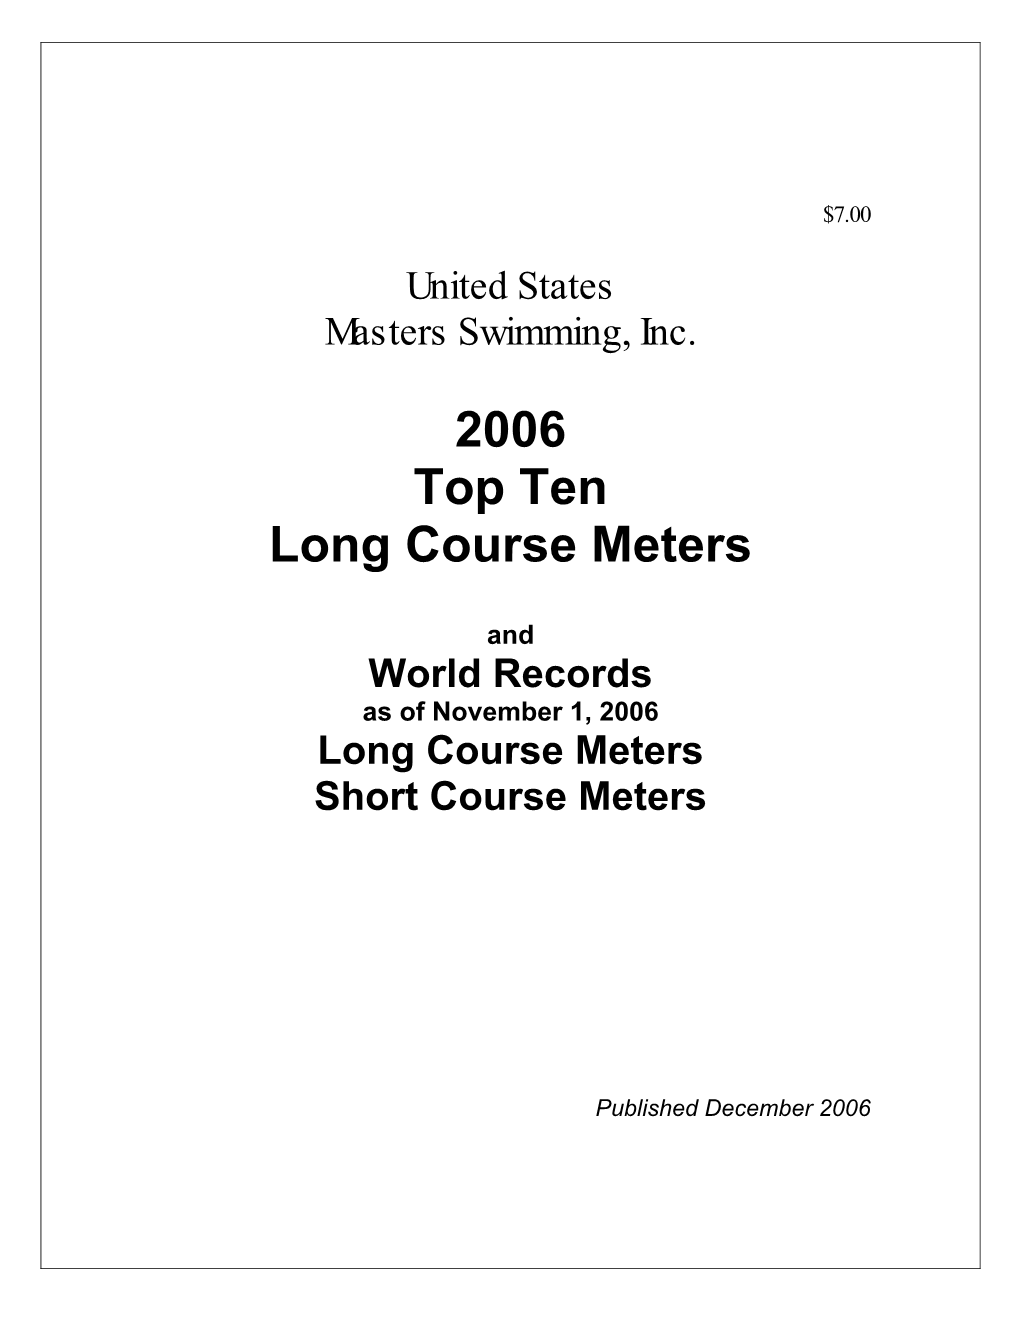 2006 Top Ten Long Course Meters